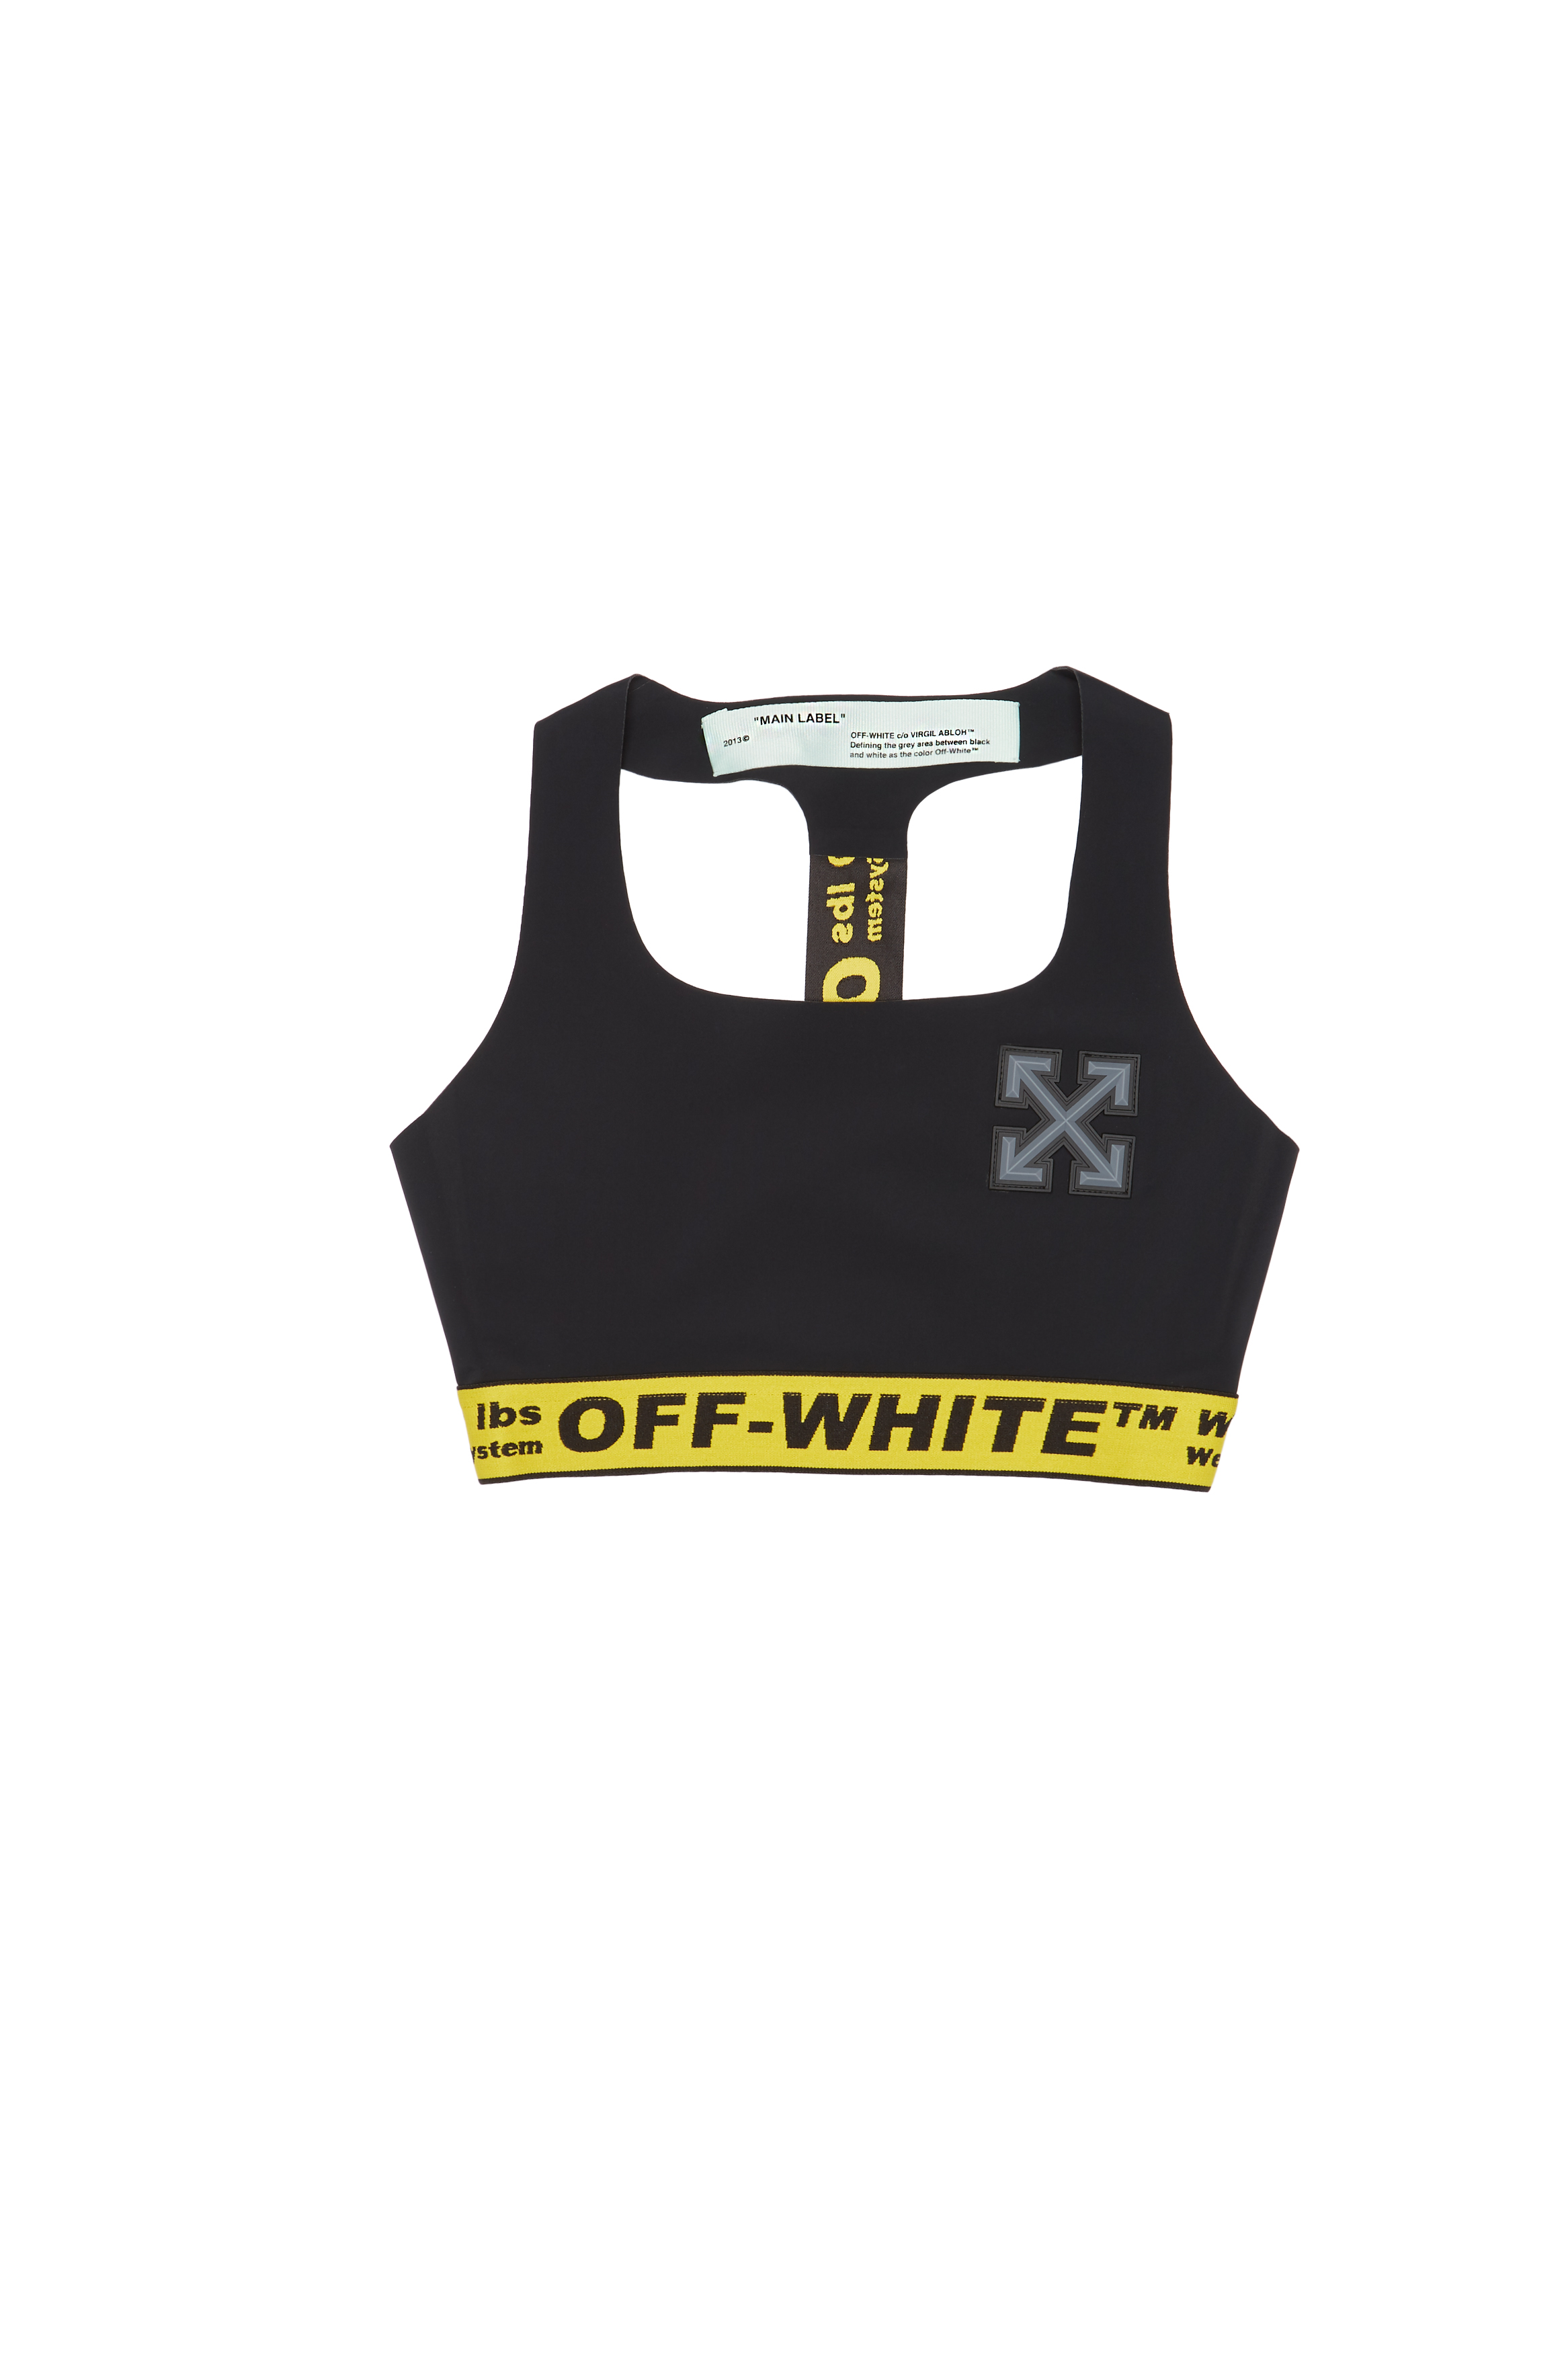 V Exclusive: Off-White x SSENSE Fitness Capsule - V Magazine